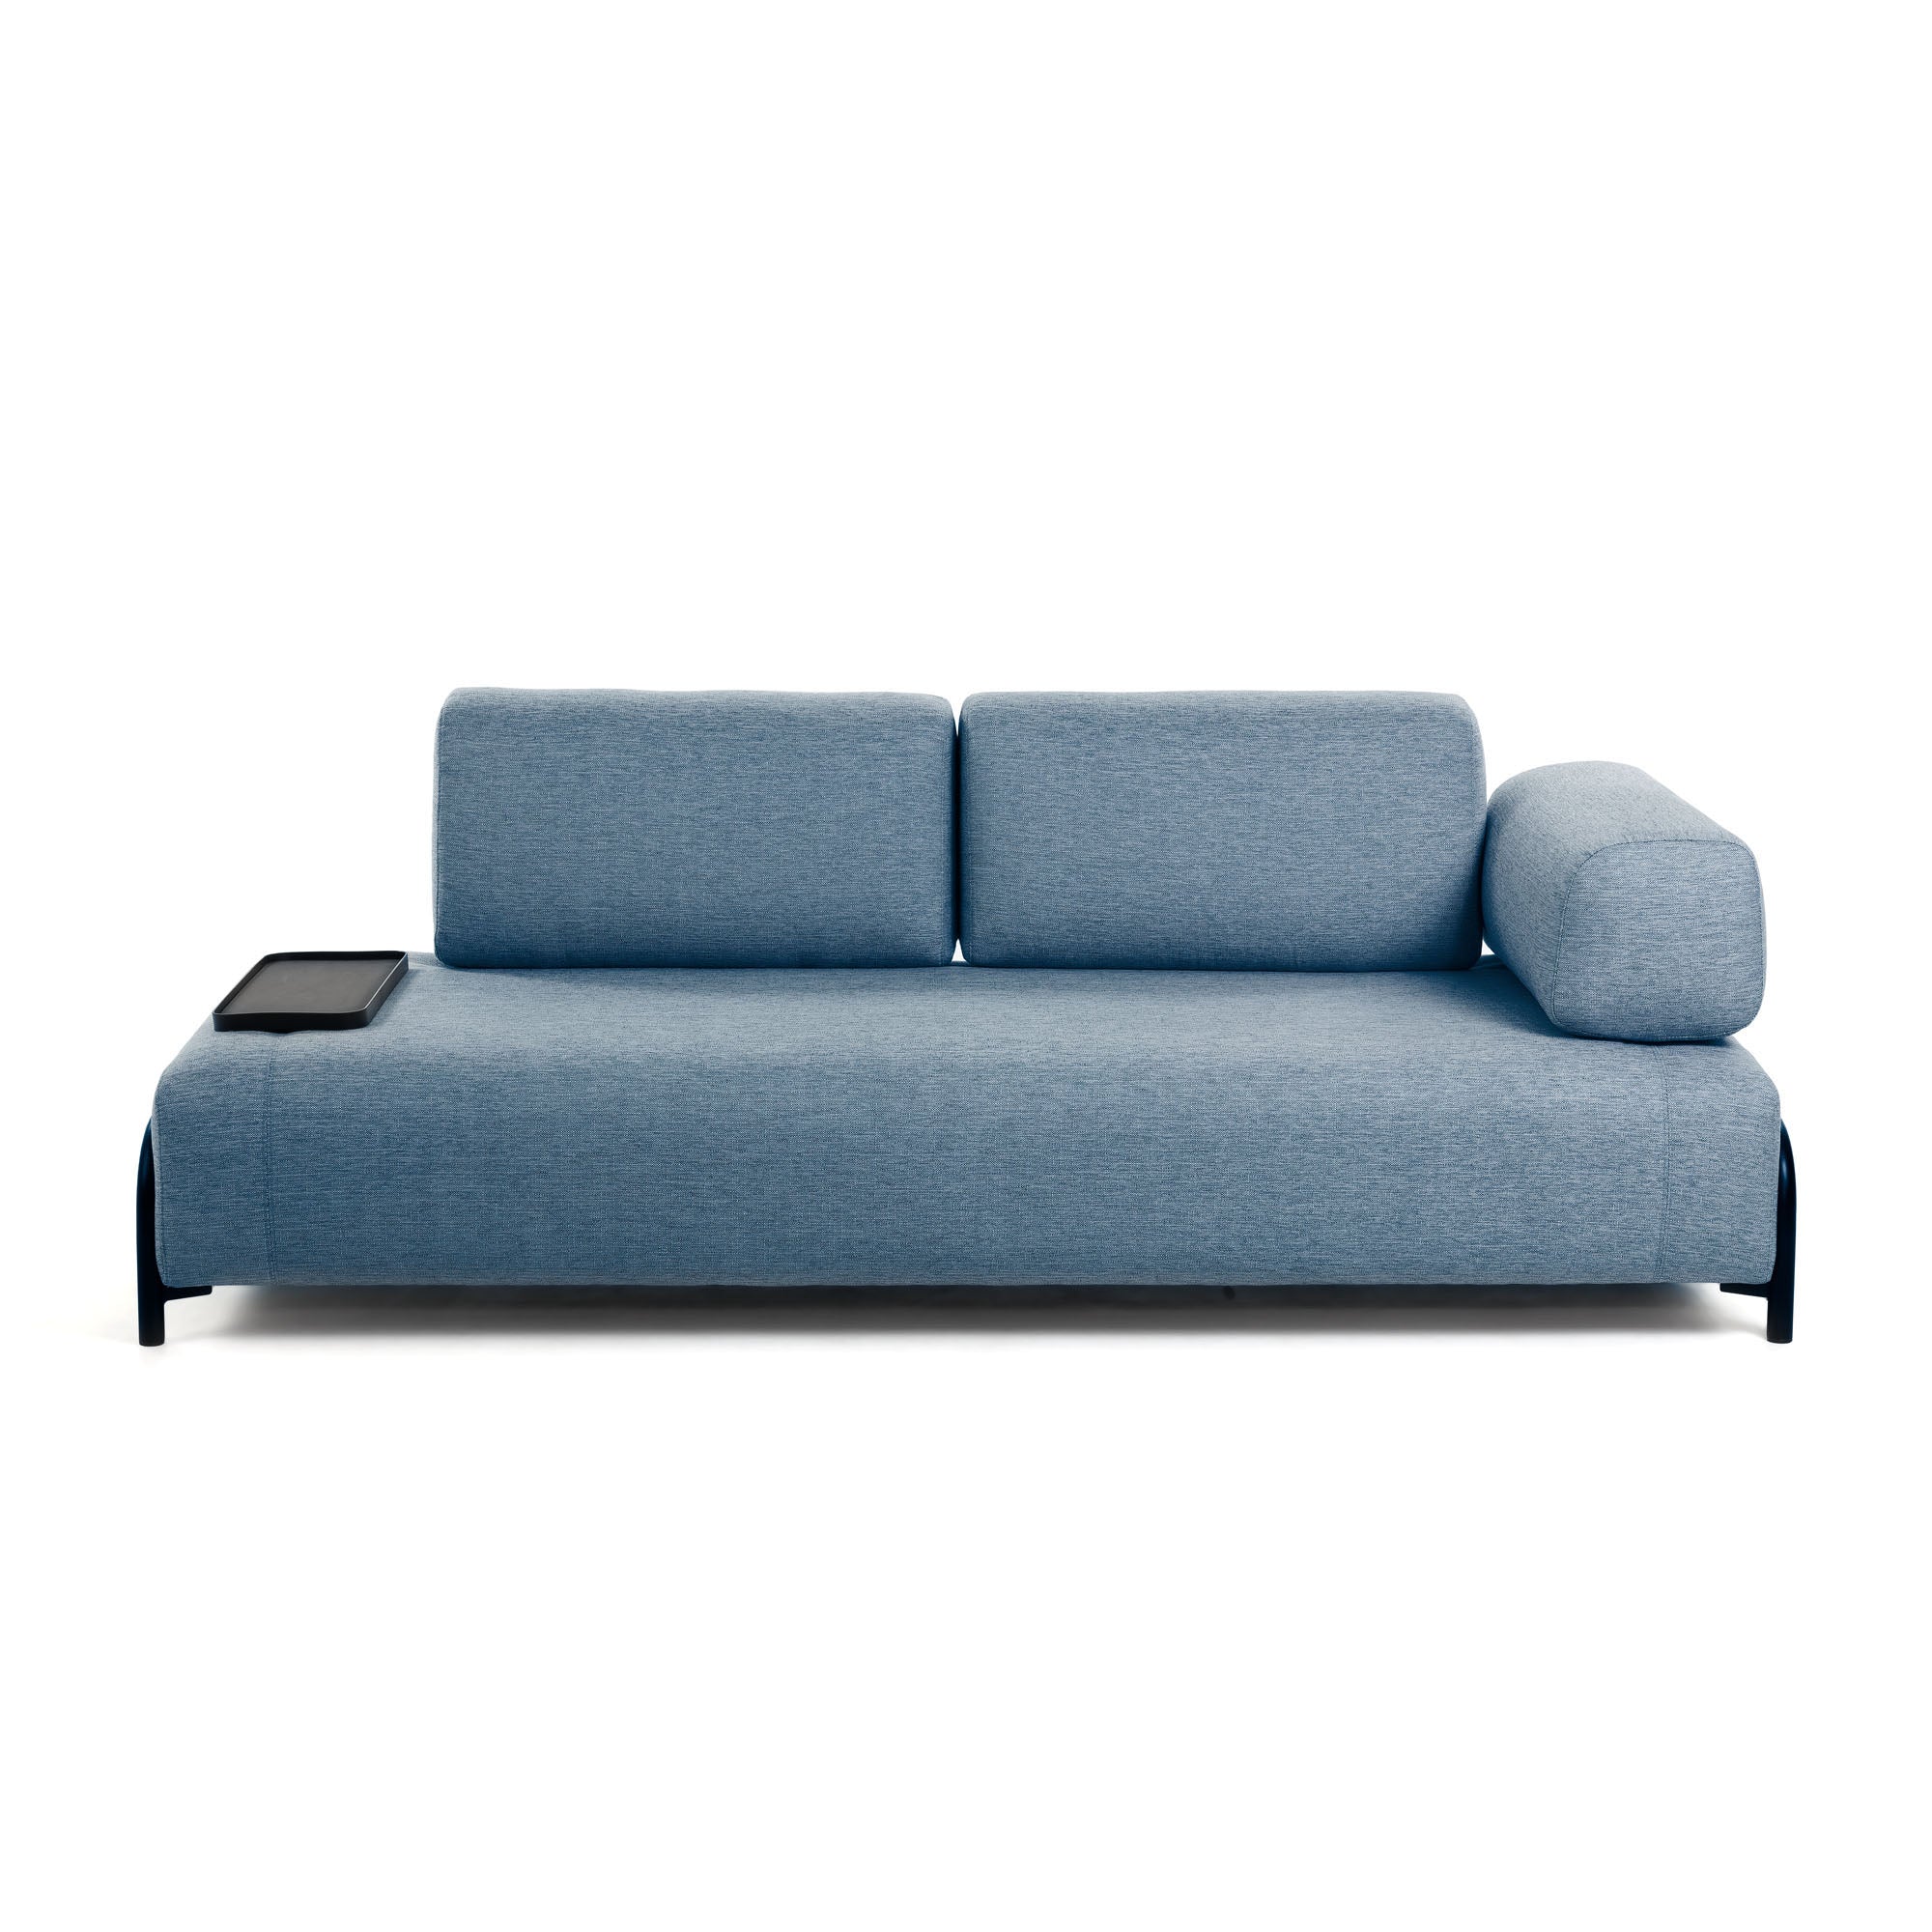 Compo 3 személyes kanapé kék színben, kis tálcával 232 cm